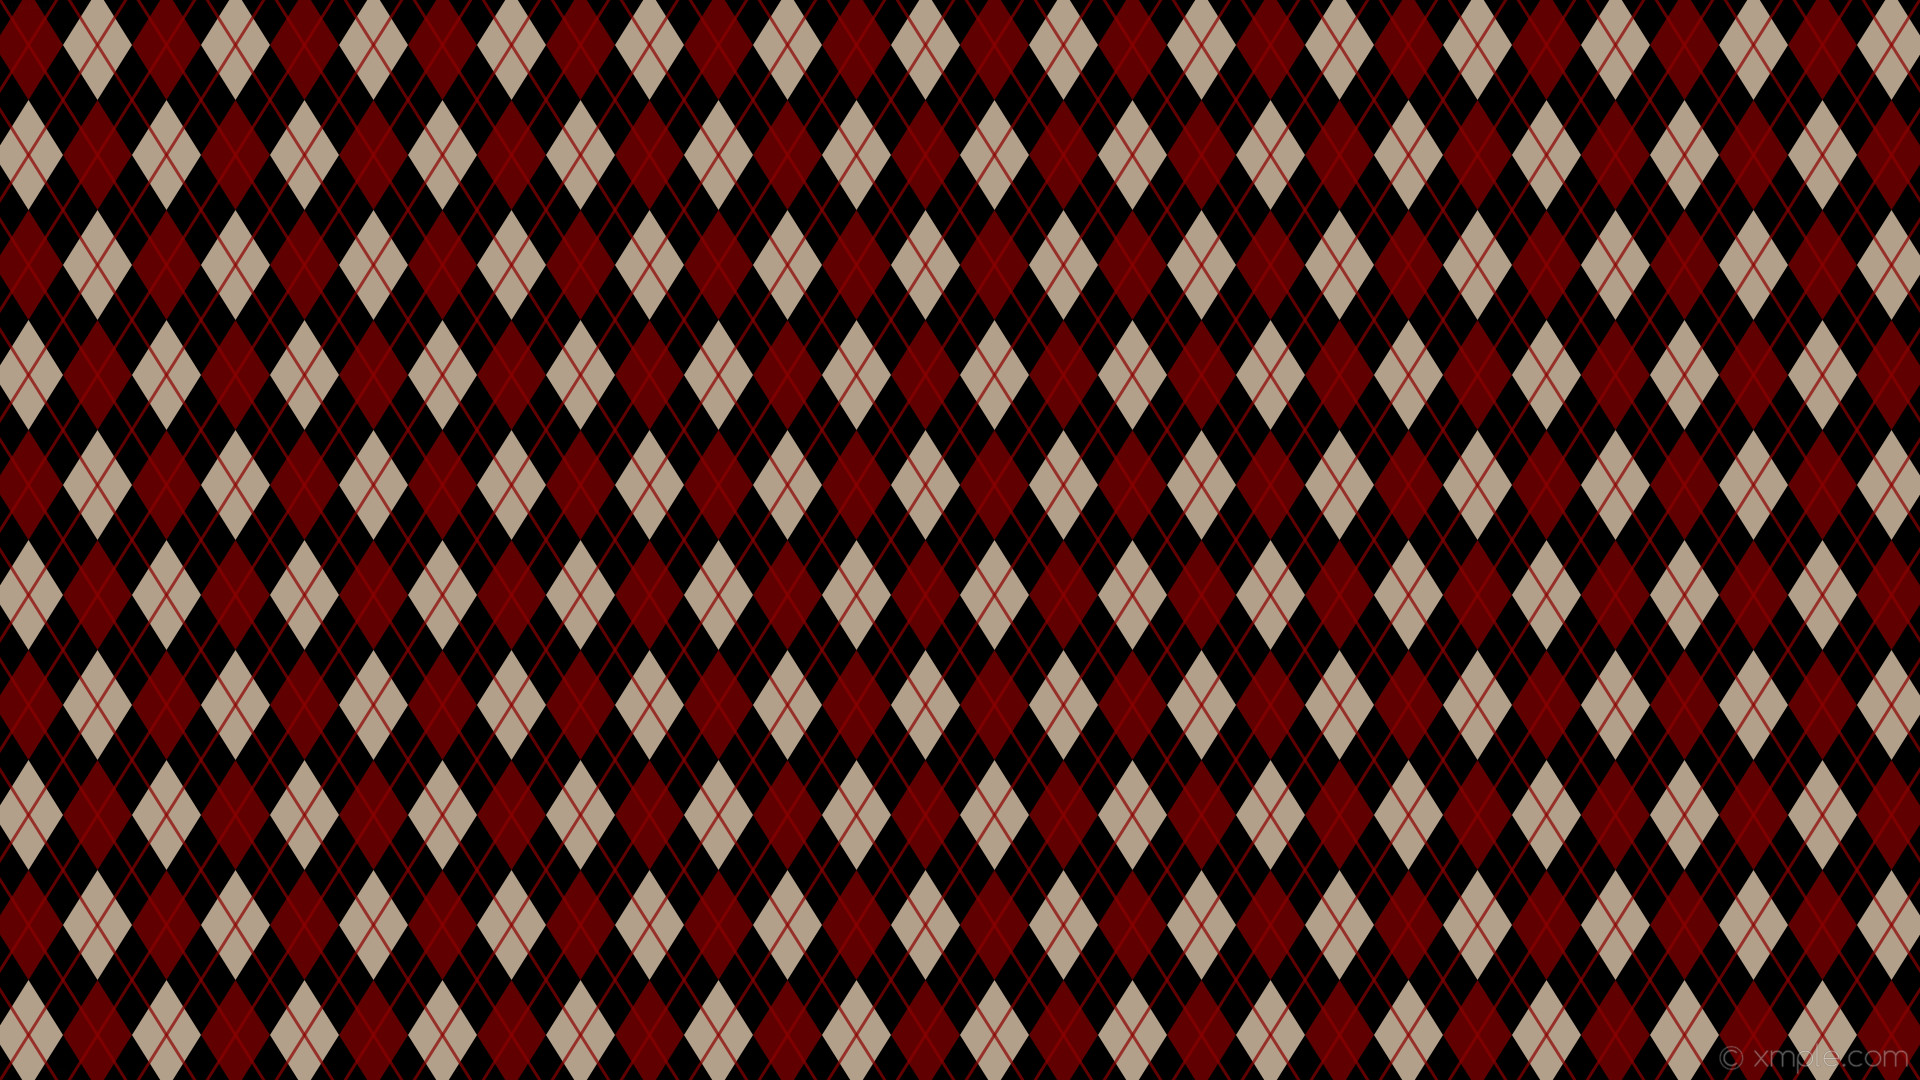 1920x1080 wallpaper brown dual argyle diamonds red black bisque dark red sienna  #000000 #ffe4c4 #